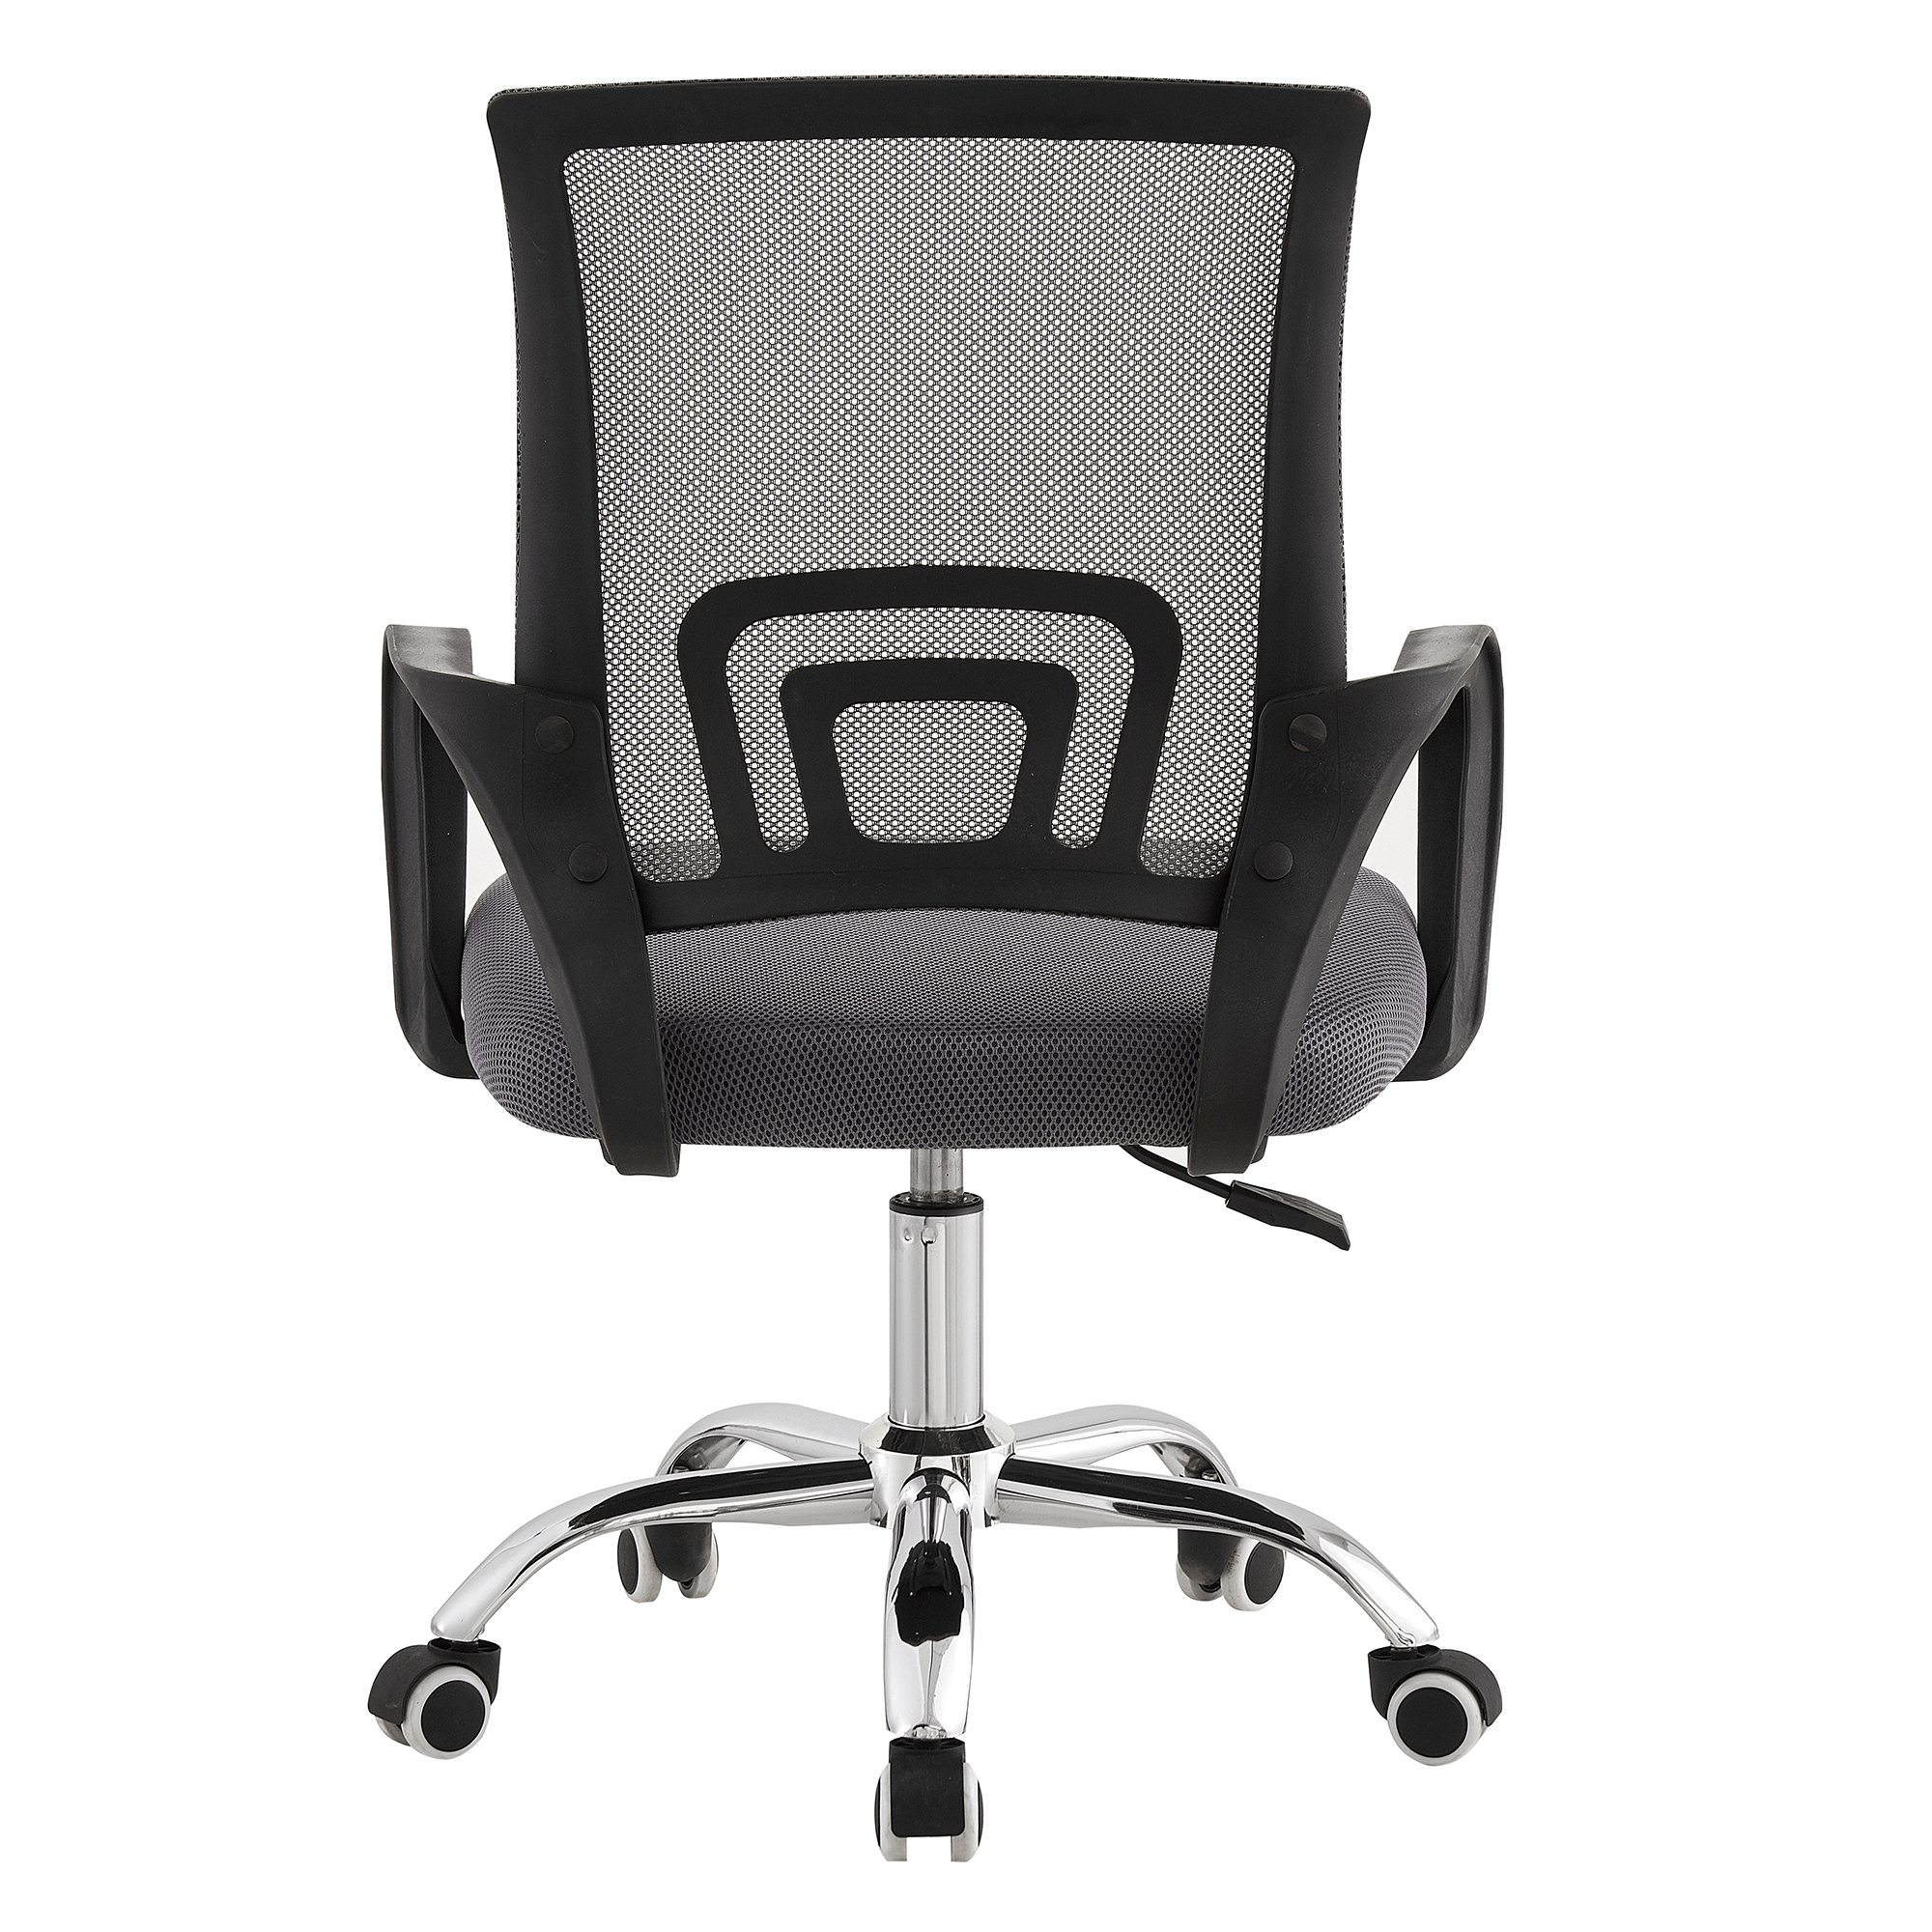 Kancelářská židle, šedá/černá, DEX 4 NEW